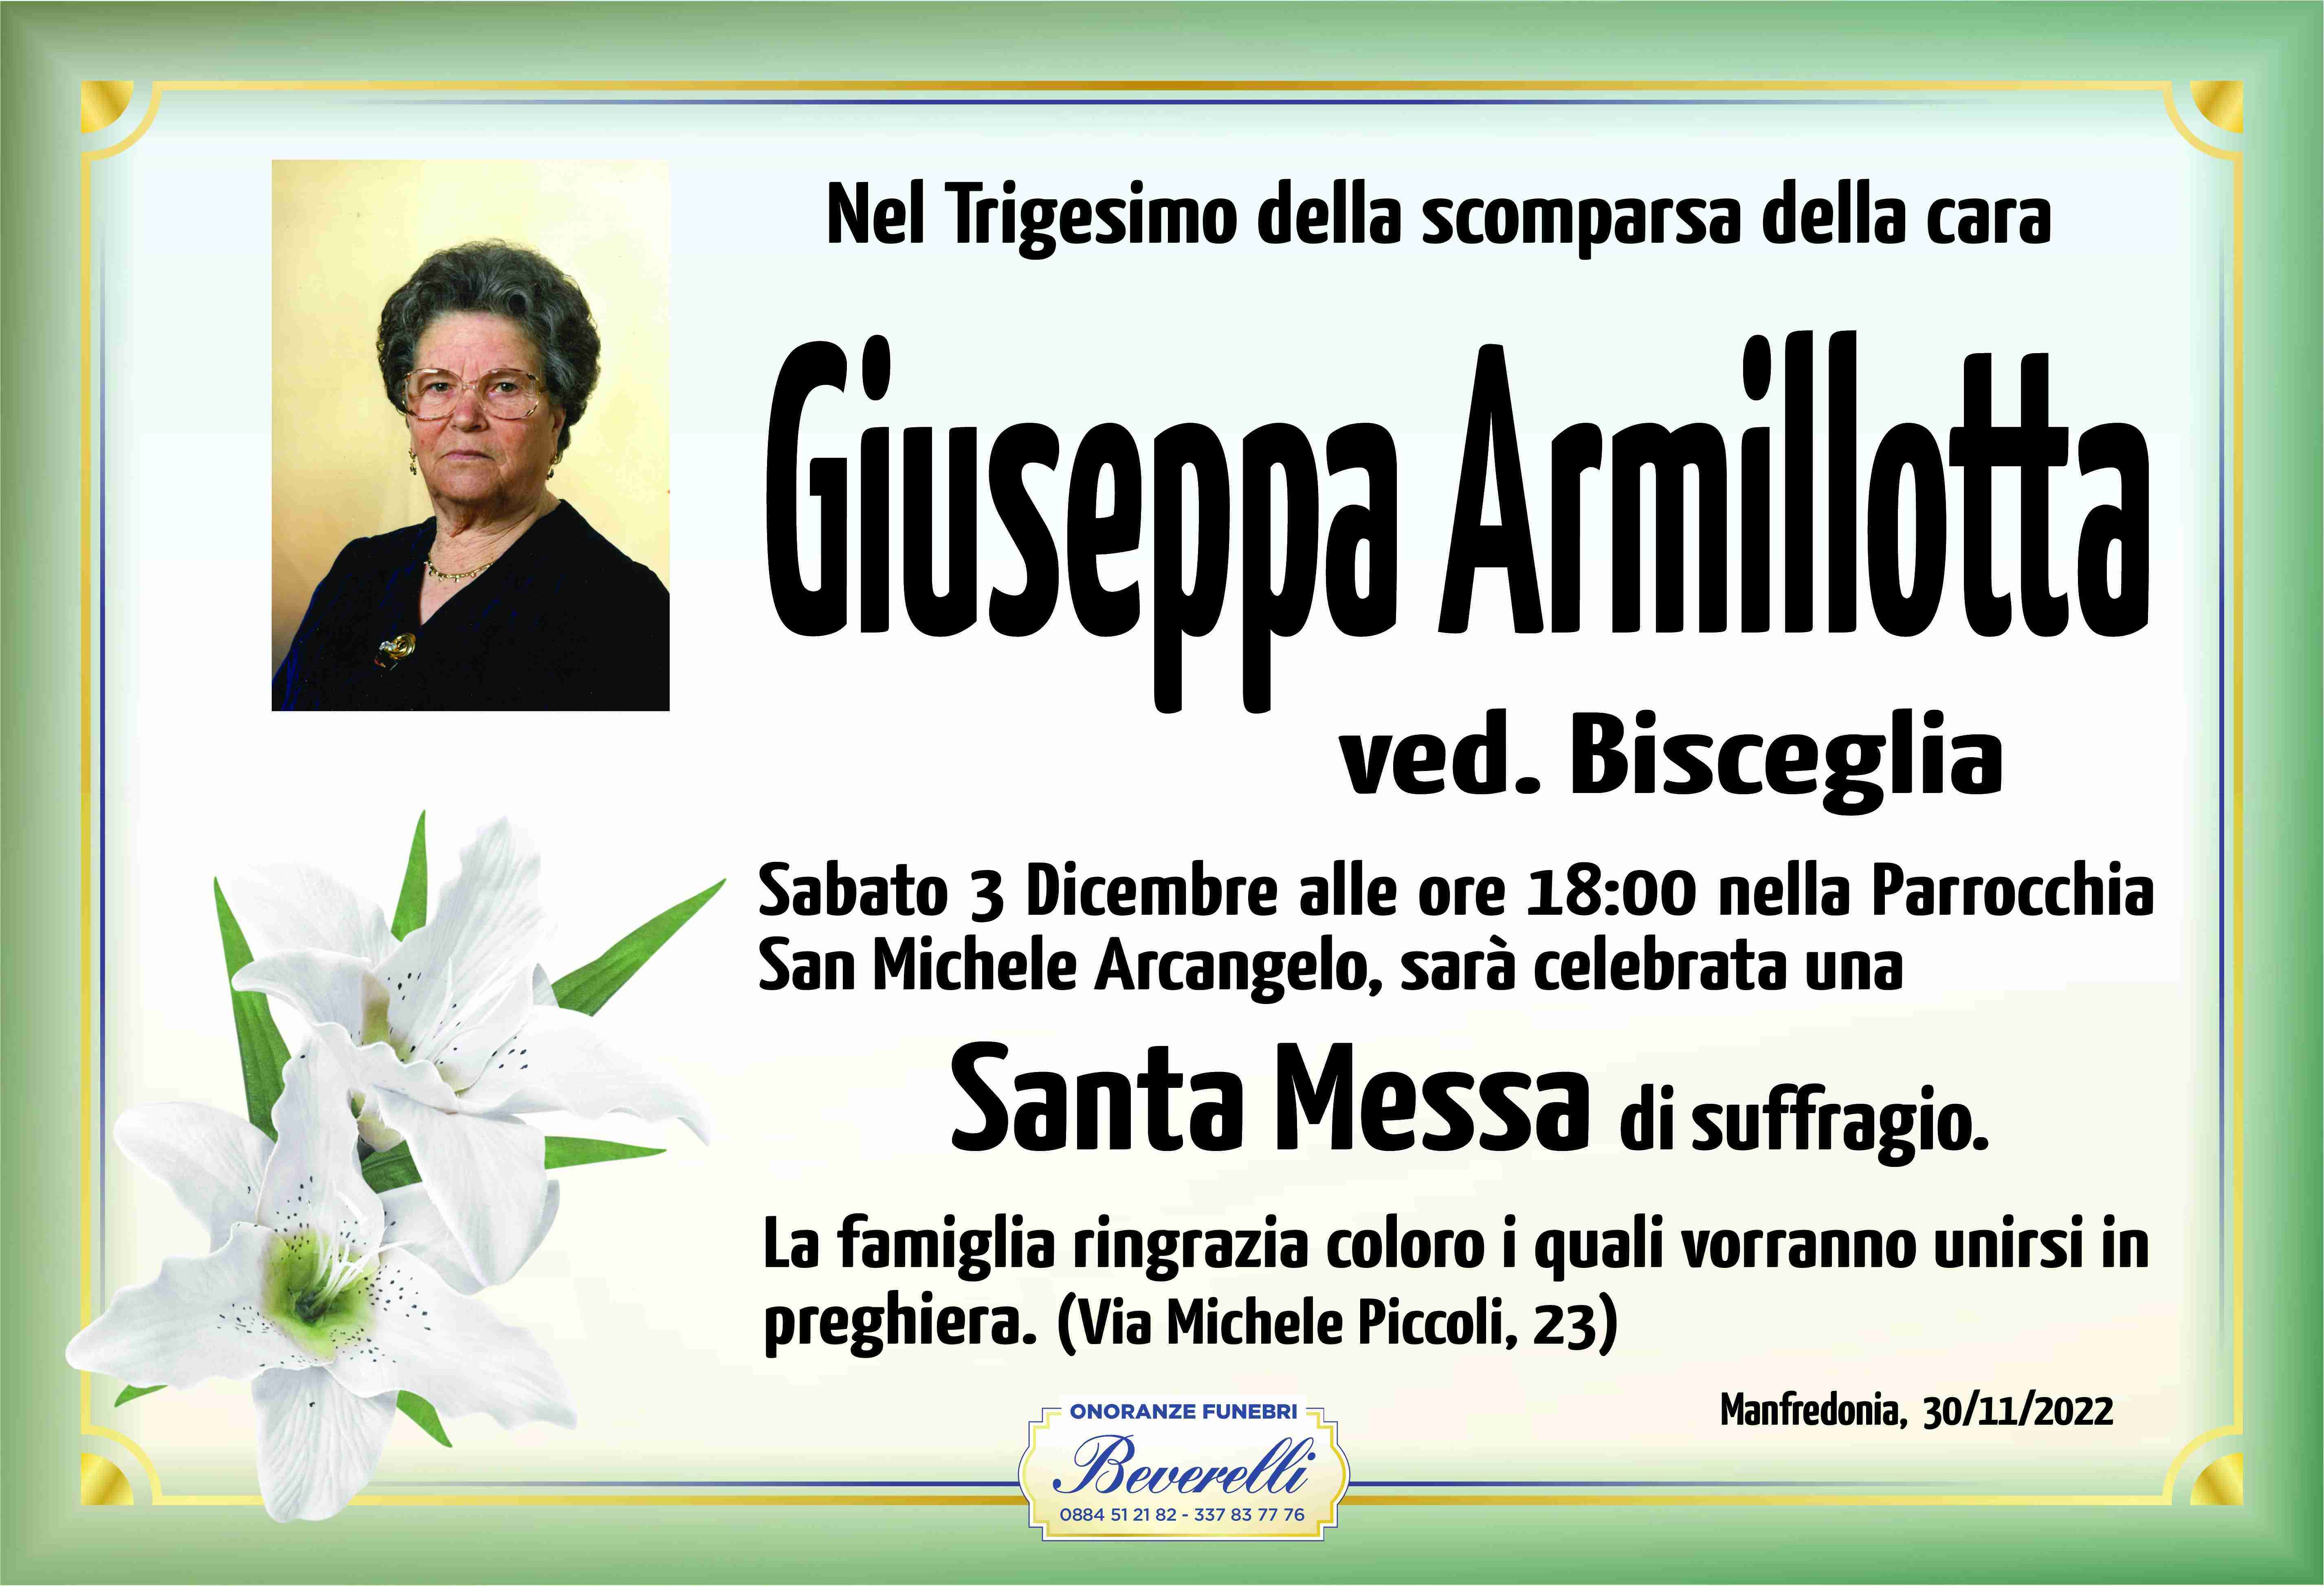 Giuseppa Armillotta